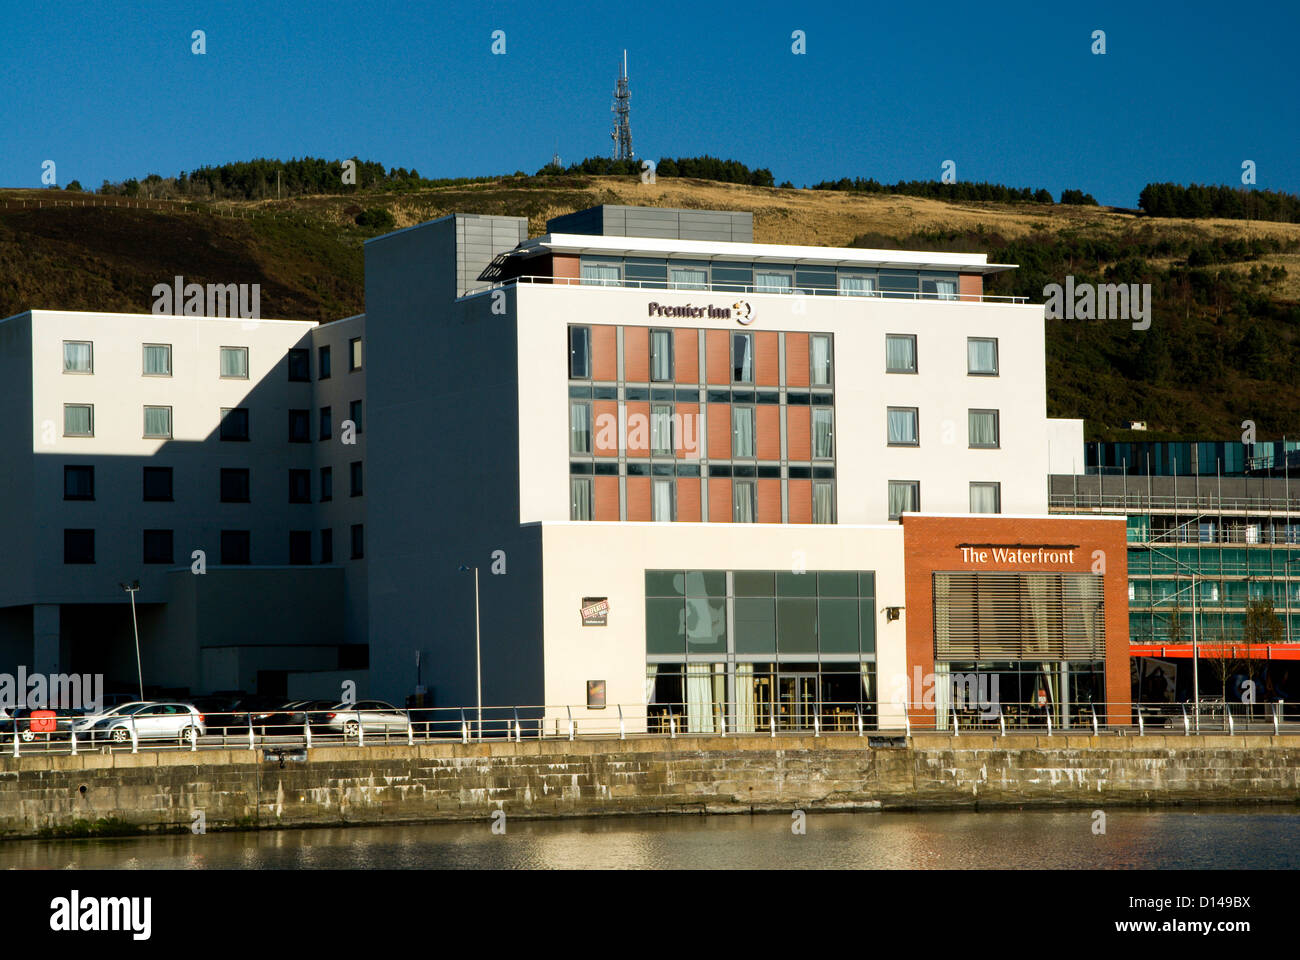 Premier Inn, SA1 development, Swansea, South Wales, UK. Stock Photo